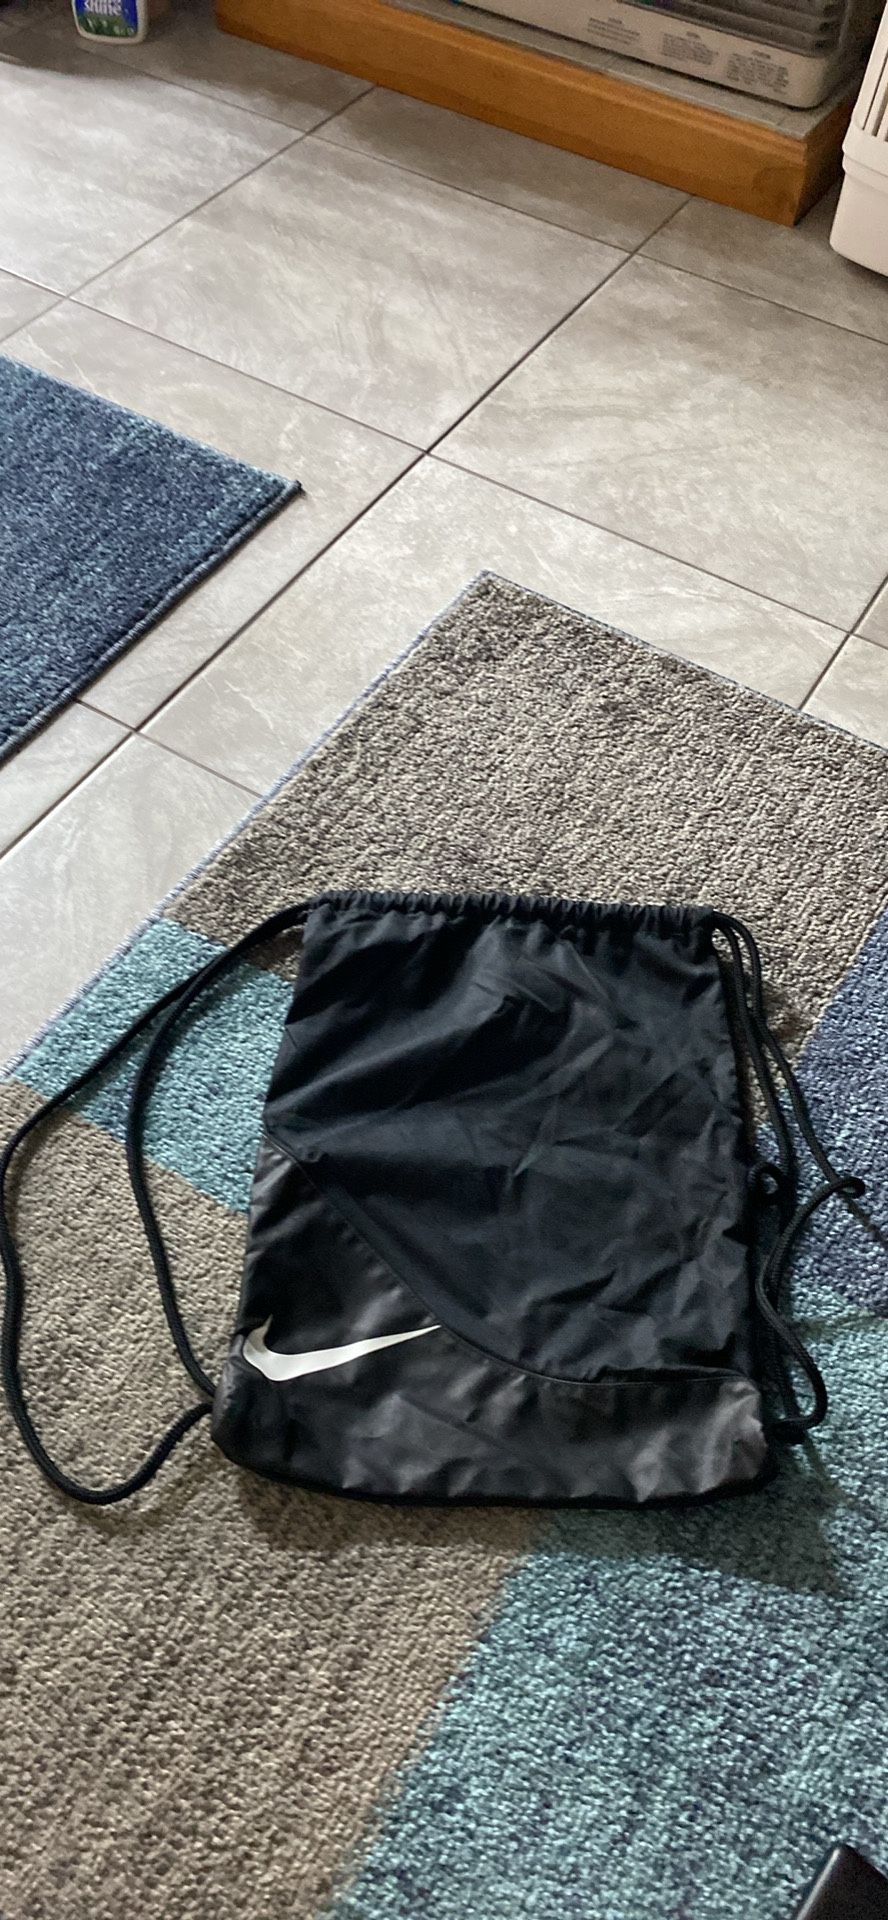 Nike Drawstring Bag